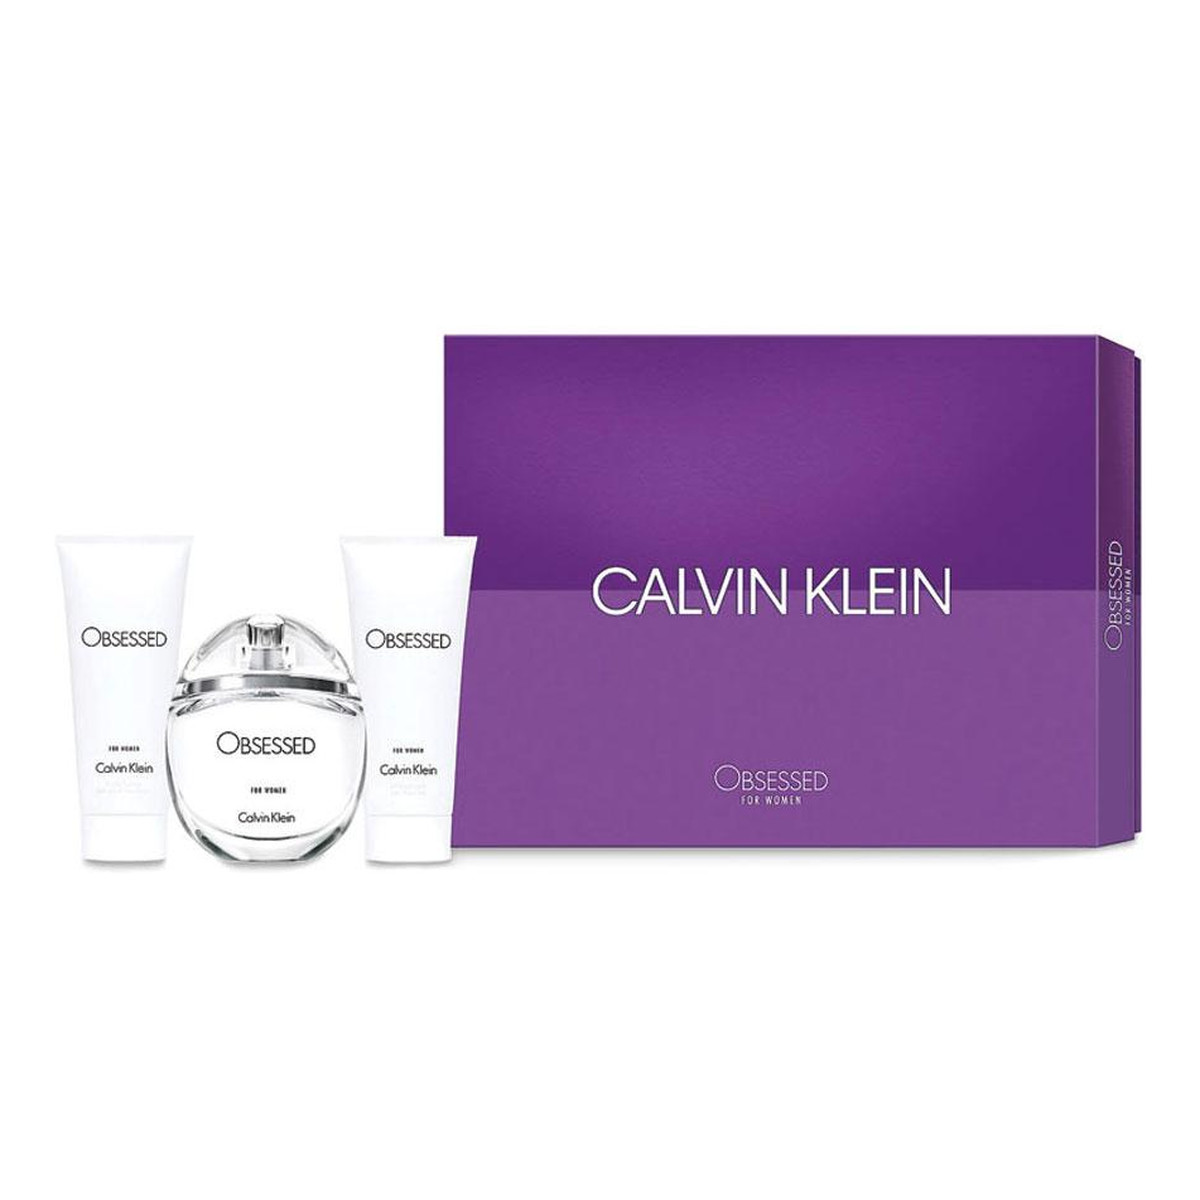 Calvin Klein Obsessed Woman zestaw (woda perfumowana 100ml + balsam do ciała 100ml + żel pod prysznic 100ml)